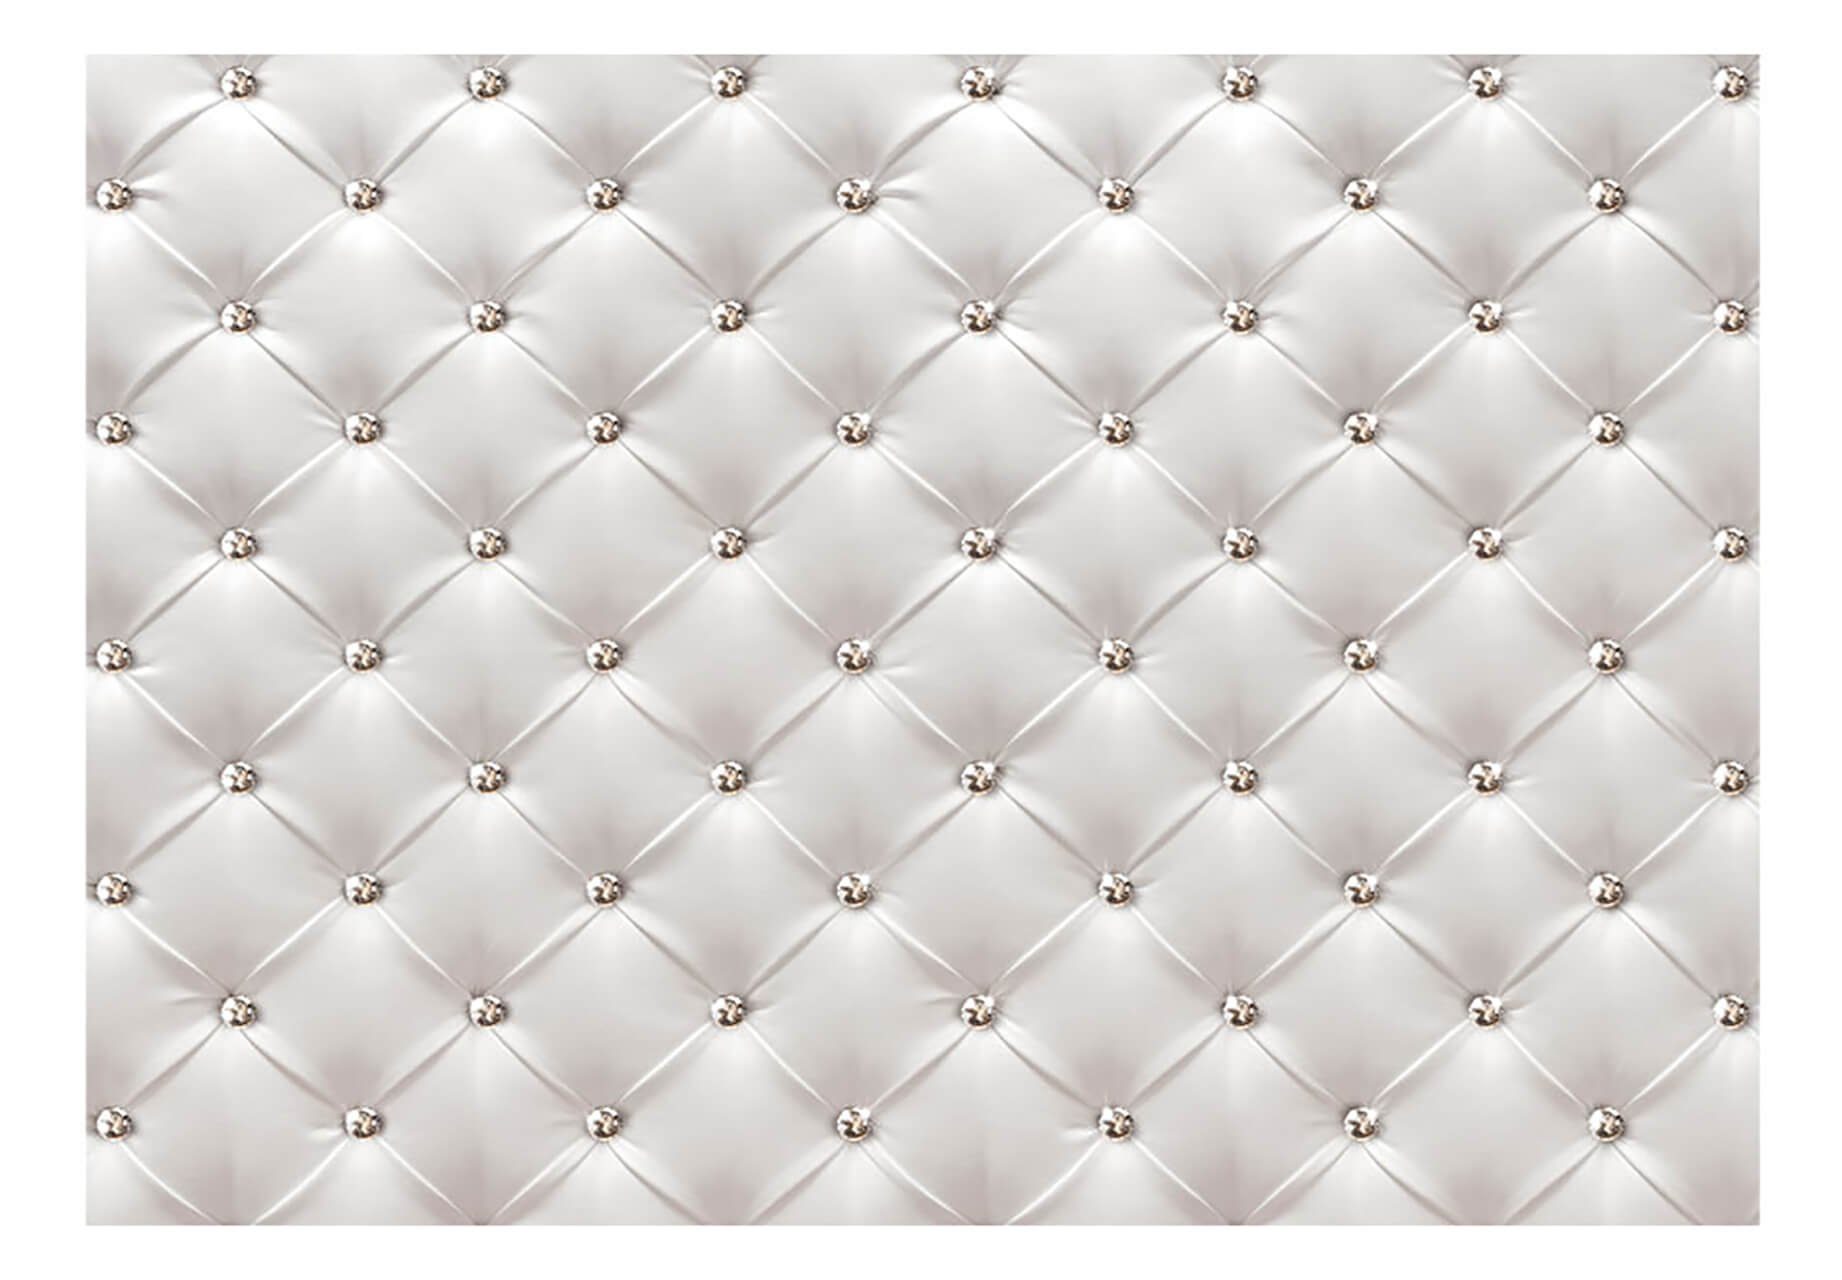 KUNSTLOFT 0.98x0.7 m, Vliestapete Design Crystal matt, Delight Tapete lichtbeständige